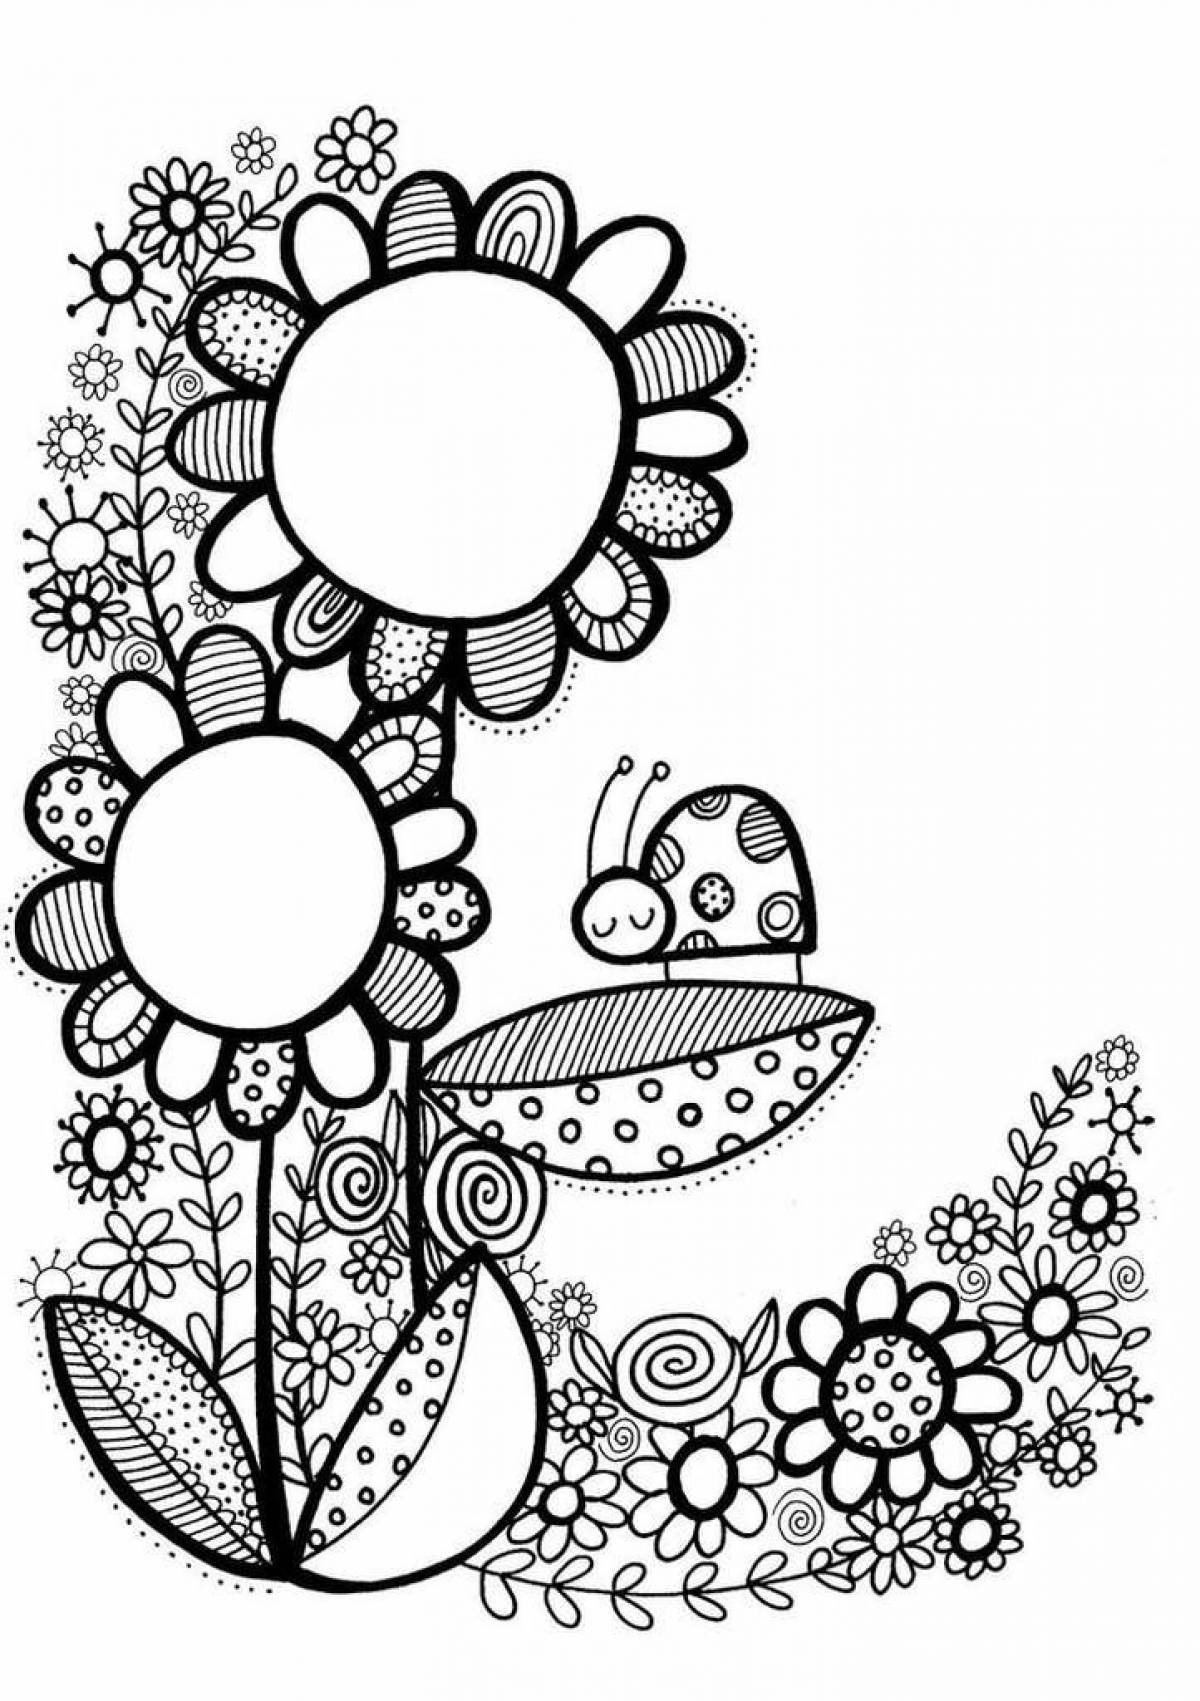 Doodling flower